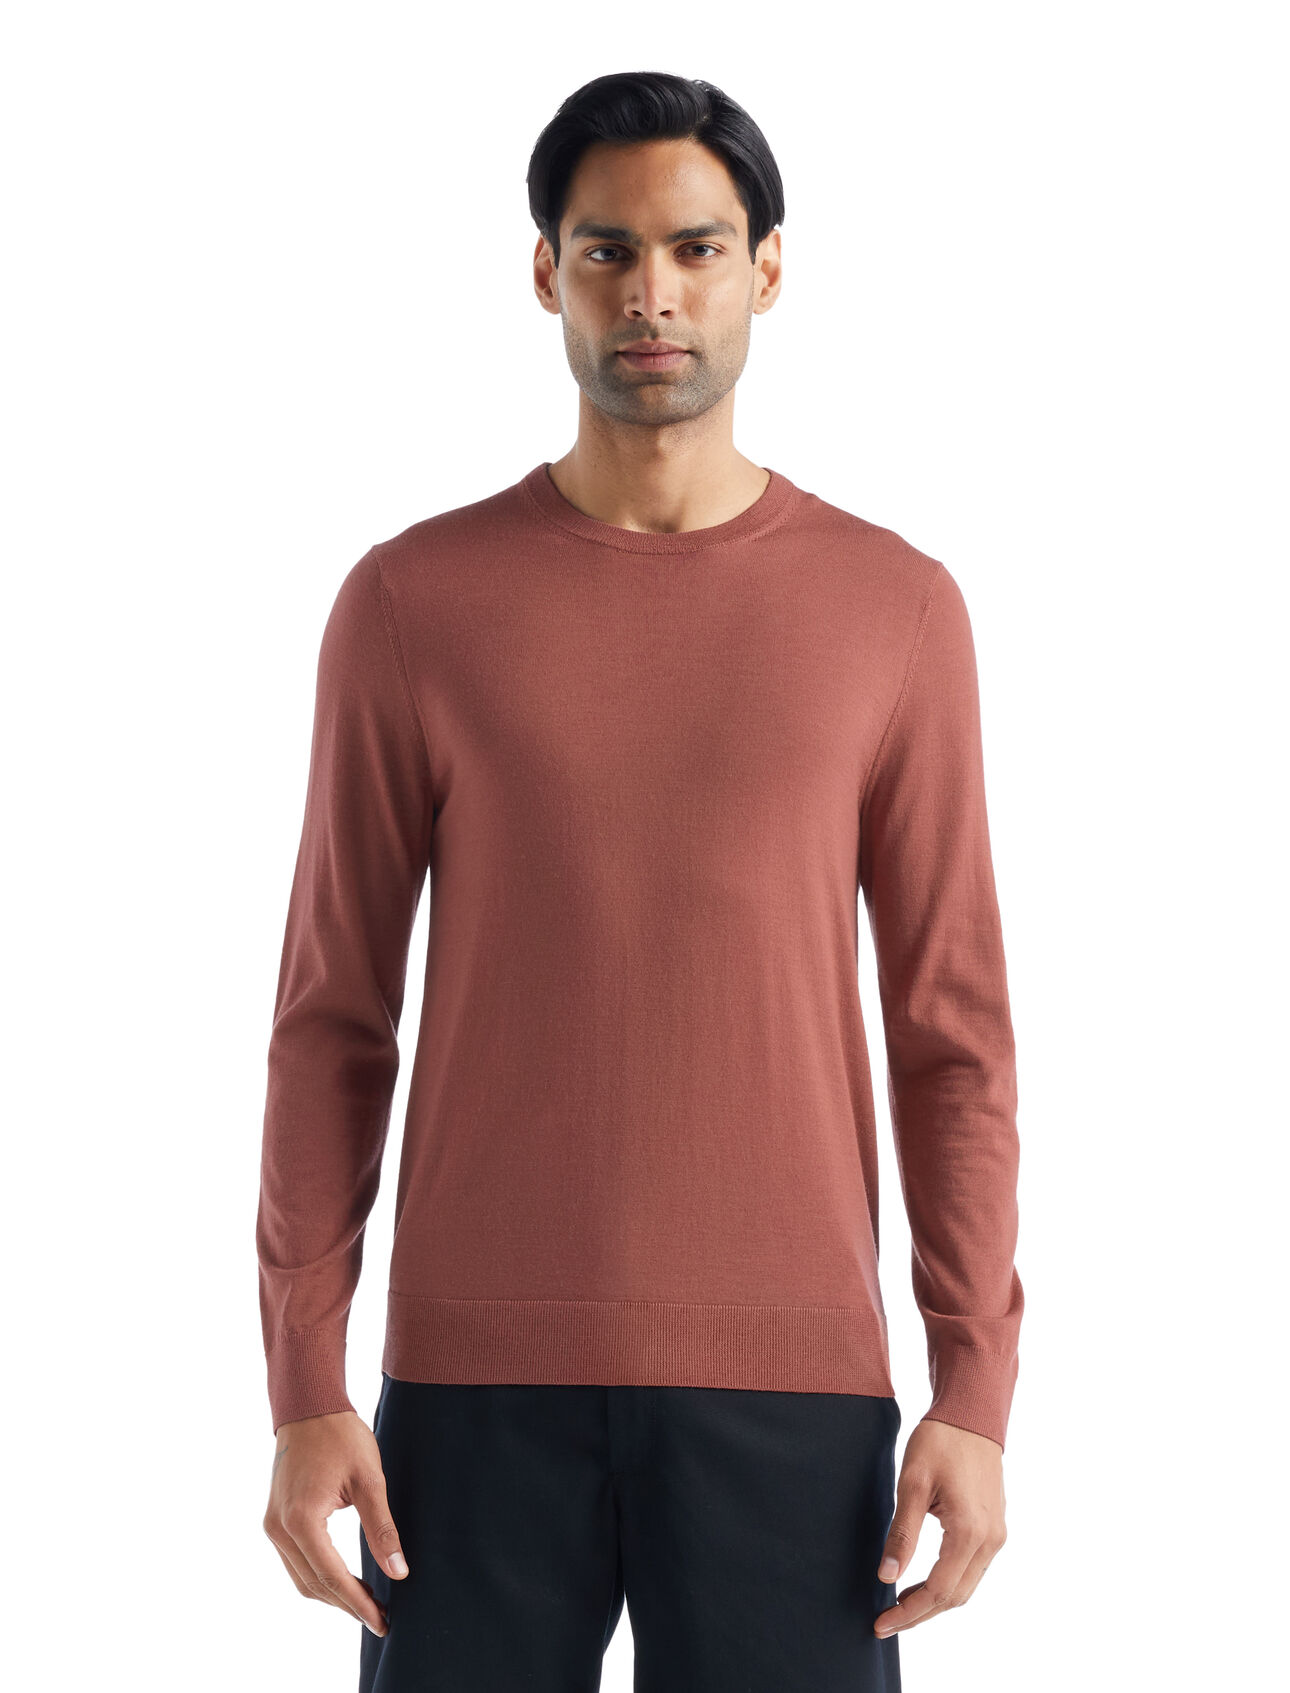 dla mężczyzn Sweter Wilcox z długim rękawem z wełny merino Klasyczny sweter na co dzień wykonany z niezwykle cienkiej wełny merino, która zapewnia niezrównaną miękkość. Sweter Wilcox z długim rękawem doskonale sprawdzi się w dni, kiedy potrzebujesz lekkiej dodatkowej warstwy.